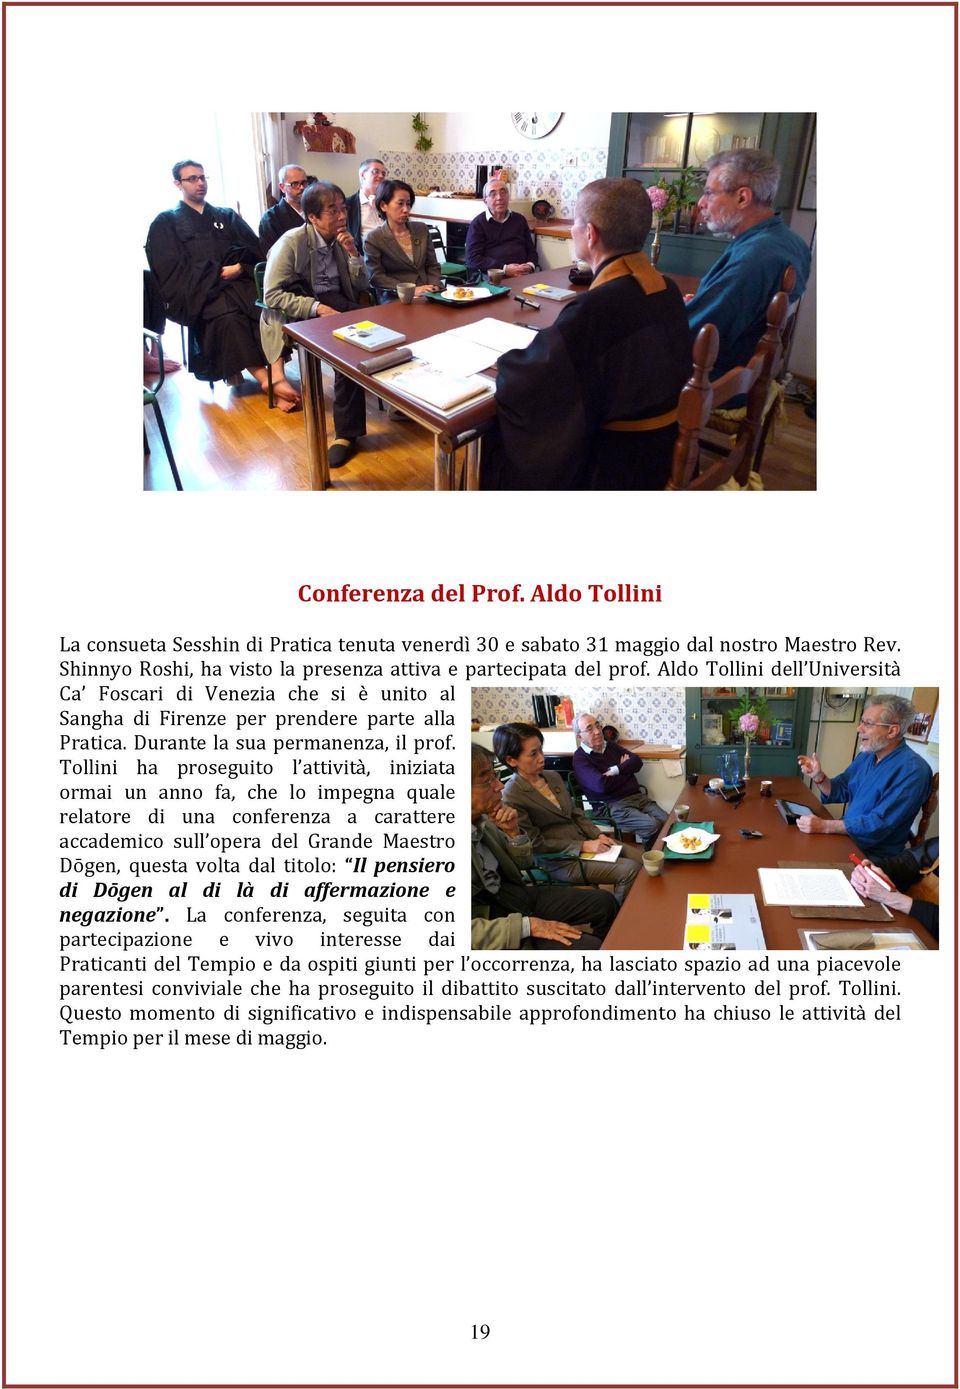 Tollini ha proseguito l attività, iniziata ormai un anno fa, che lo impegna quale relatore di una conferenza a carattere accademico sull opera del Grande Maestro Dōgen, questa volta dal titolo: Il